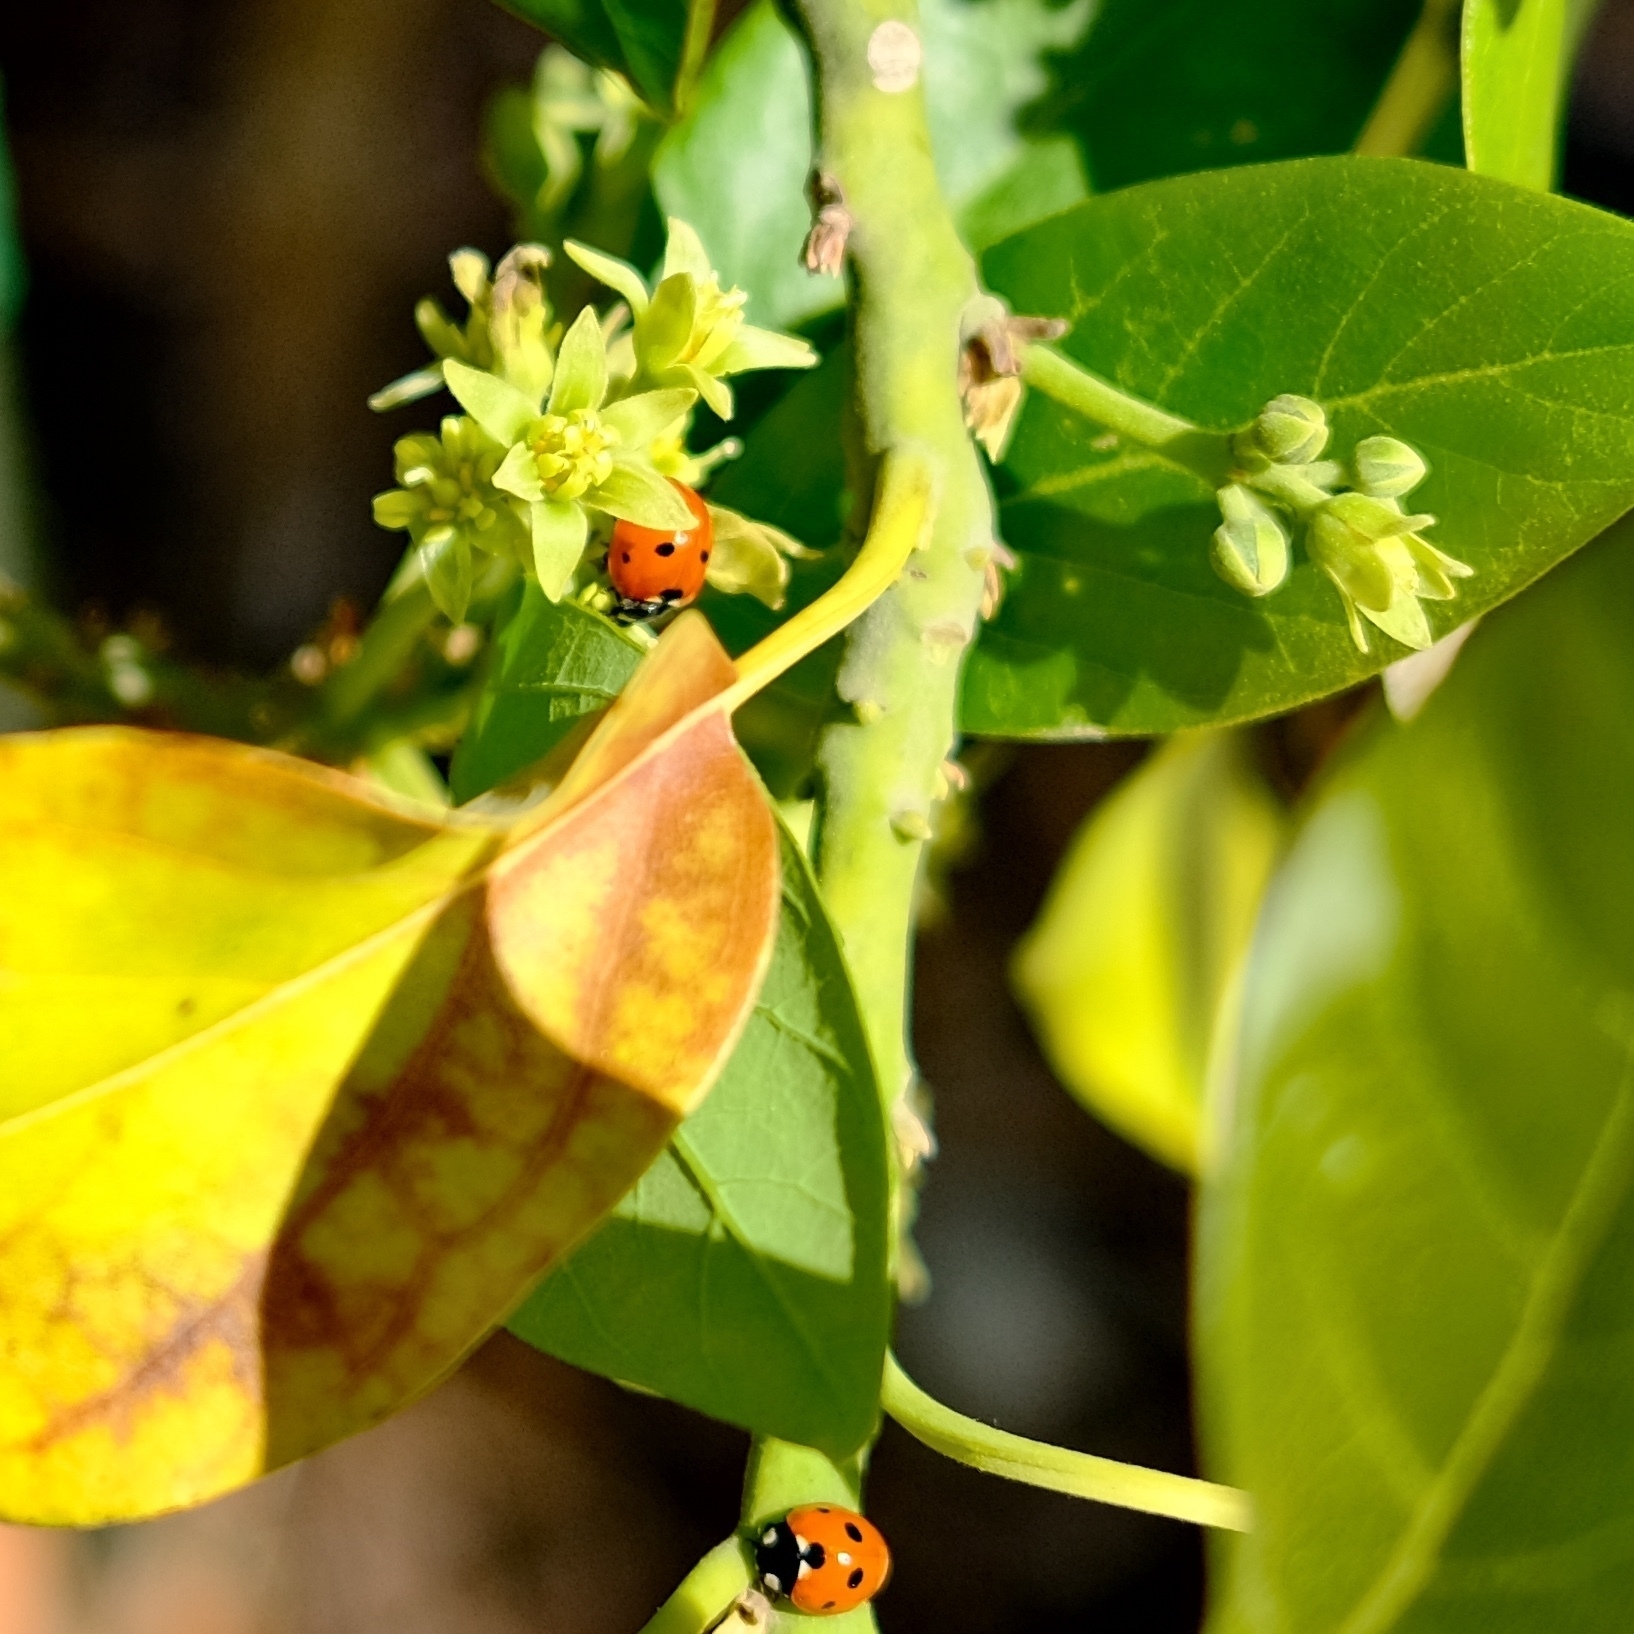 ladybugs enjoying the avocado tree.